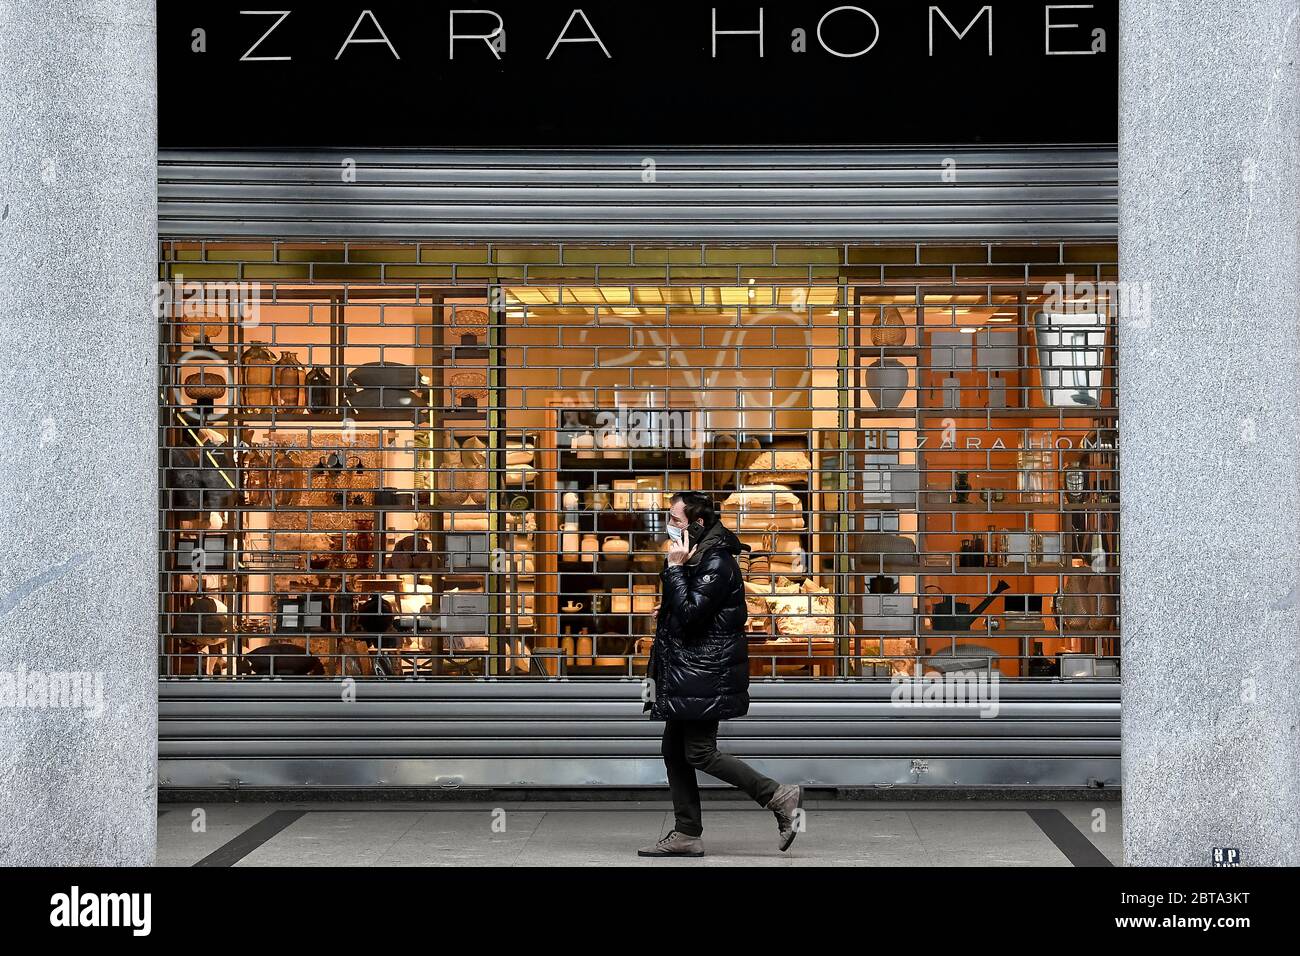 Zara home shop Banque de photographies et d'images à haute résolution -  Alamy